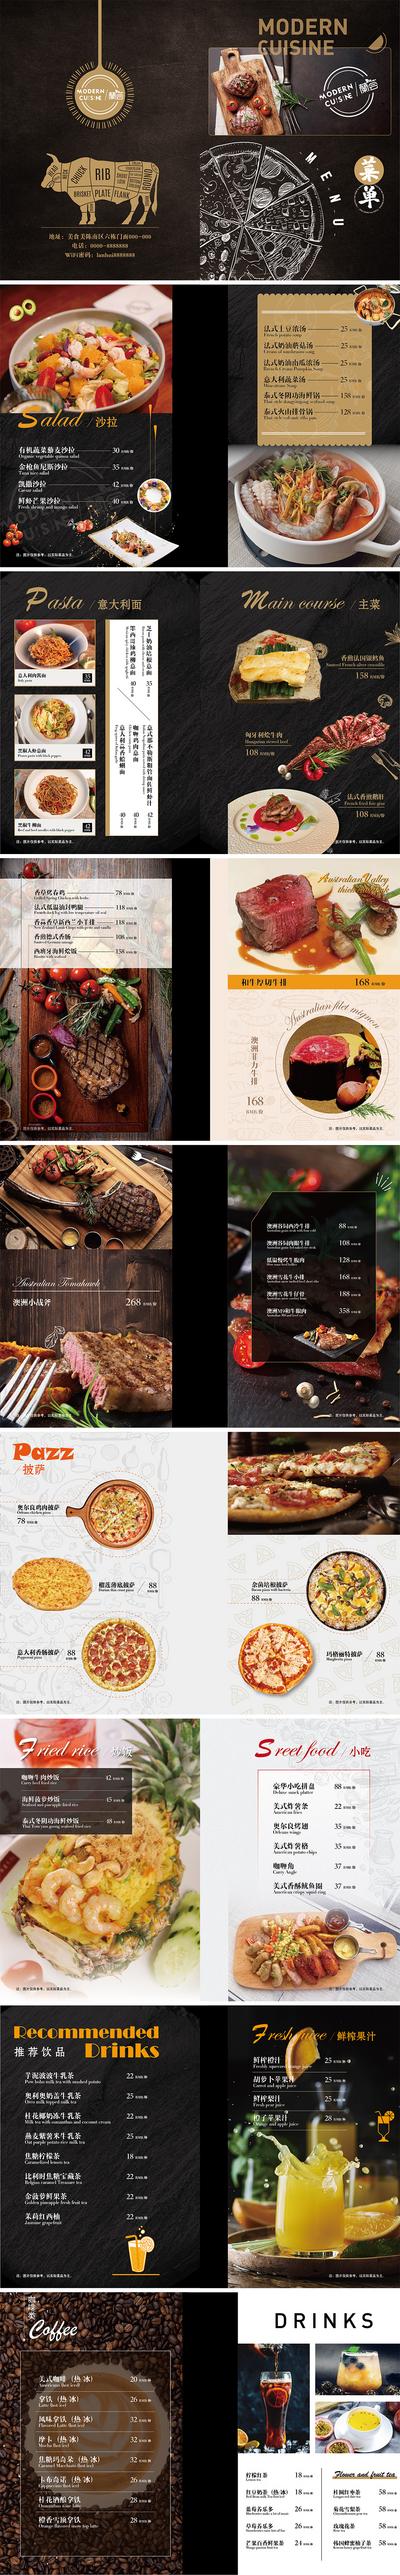 南门网 画册 宣传册 餐厅 西餐 简洁 牛排 披萨 冷饮